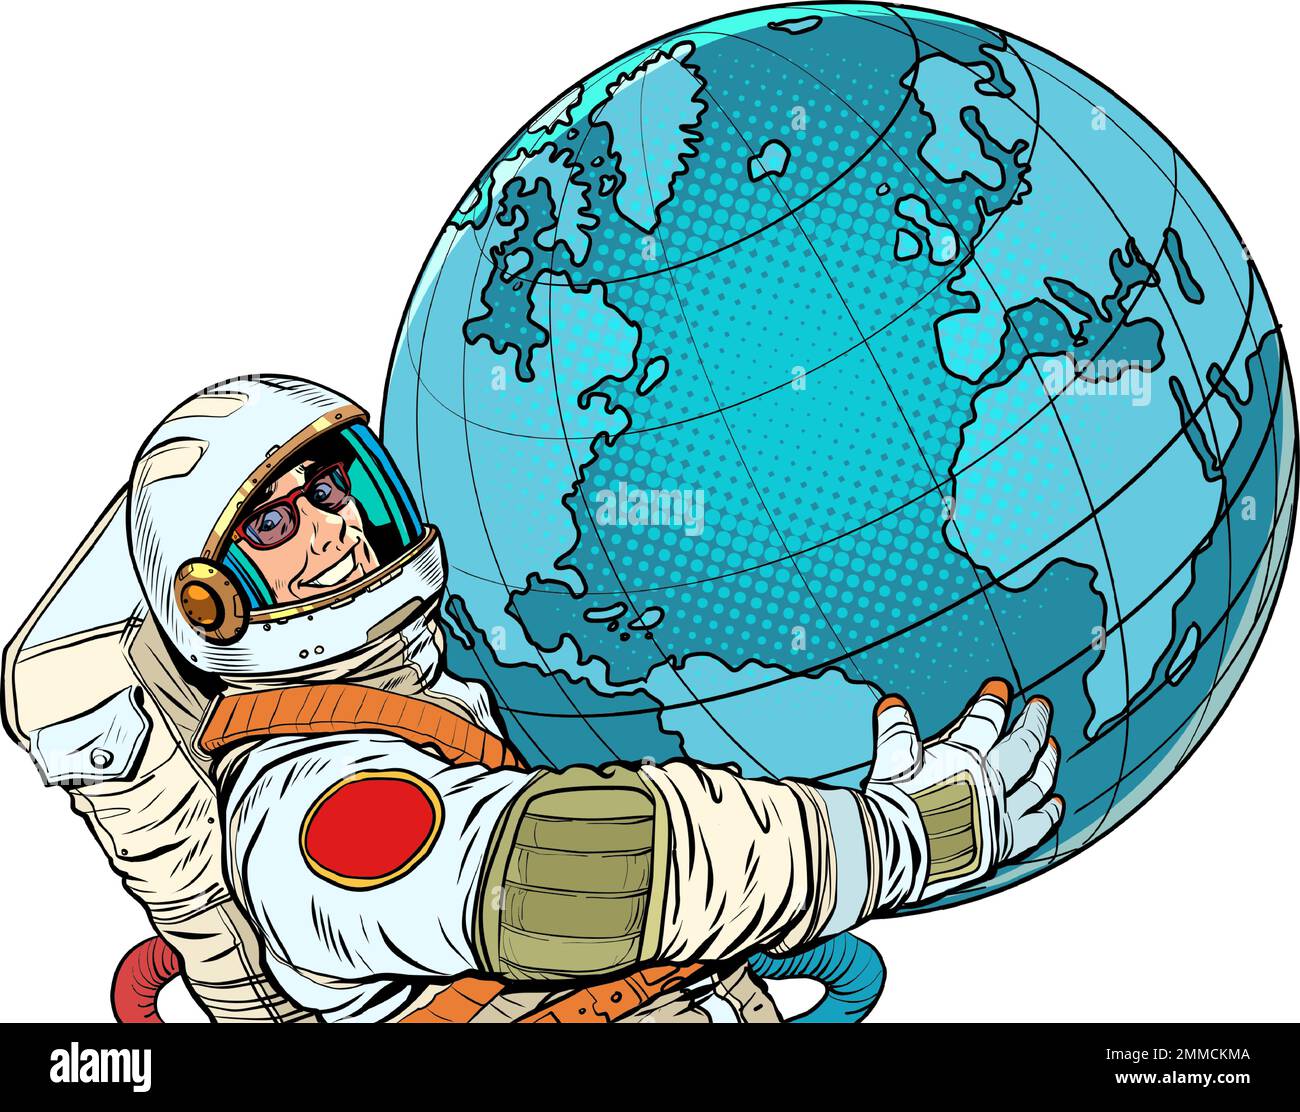 Der Astronaut hält den Planeten Erde, Wissenschaft, Ökologie, Menschlichkeit in seinen Händen. Pop Art Retro-Vektordarstellung 50s 60s klassischer Kitsch-Stil Stock Vektor